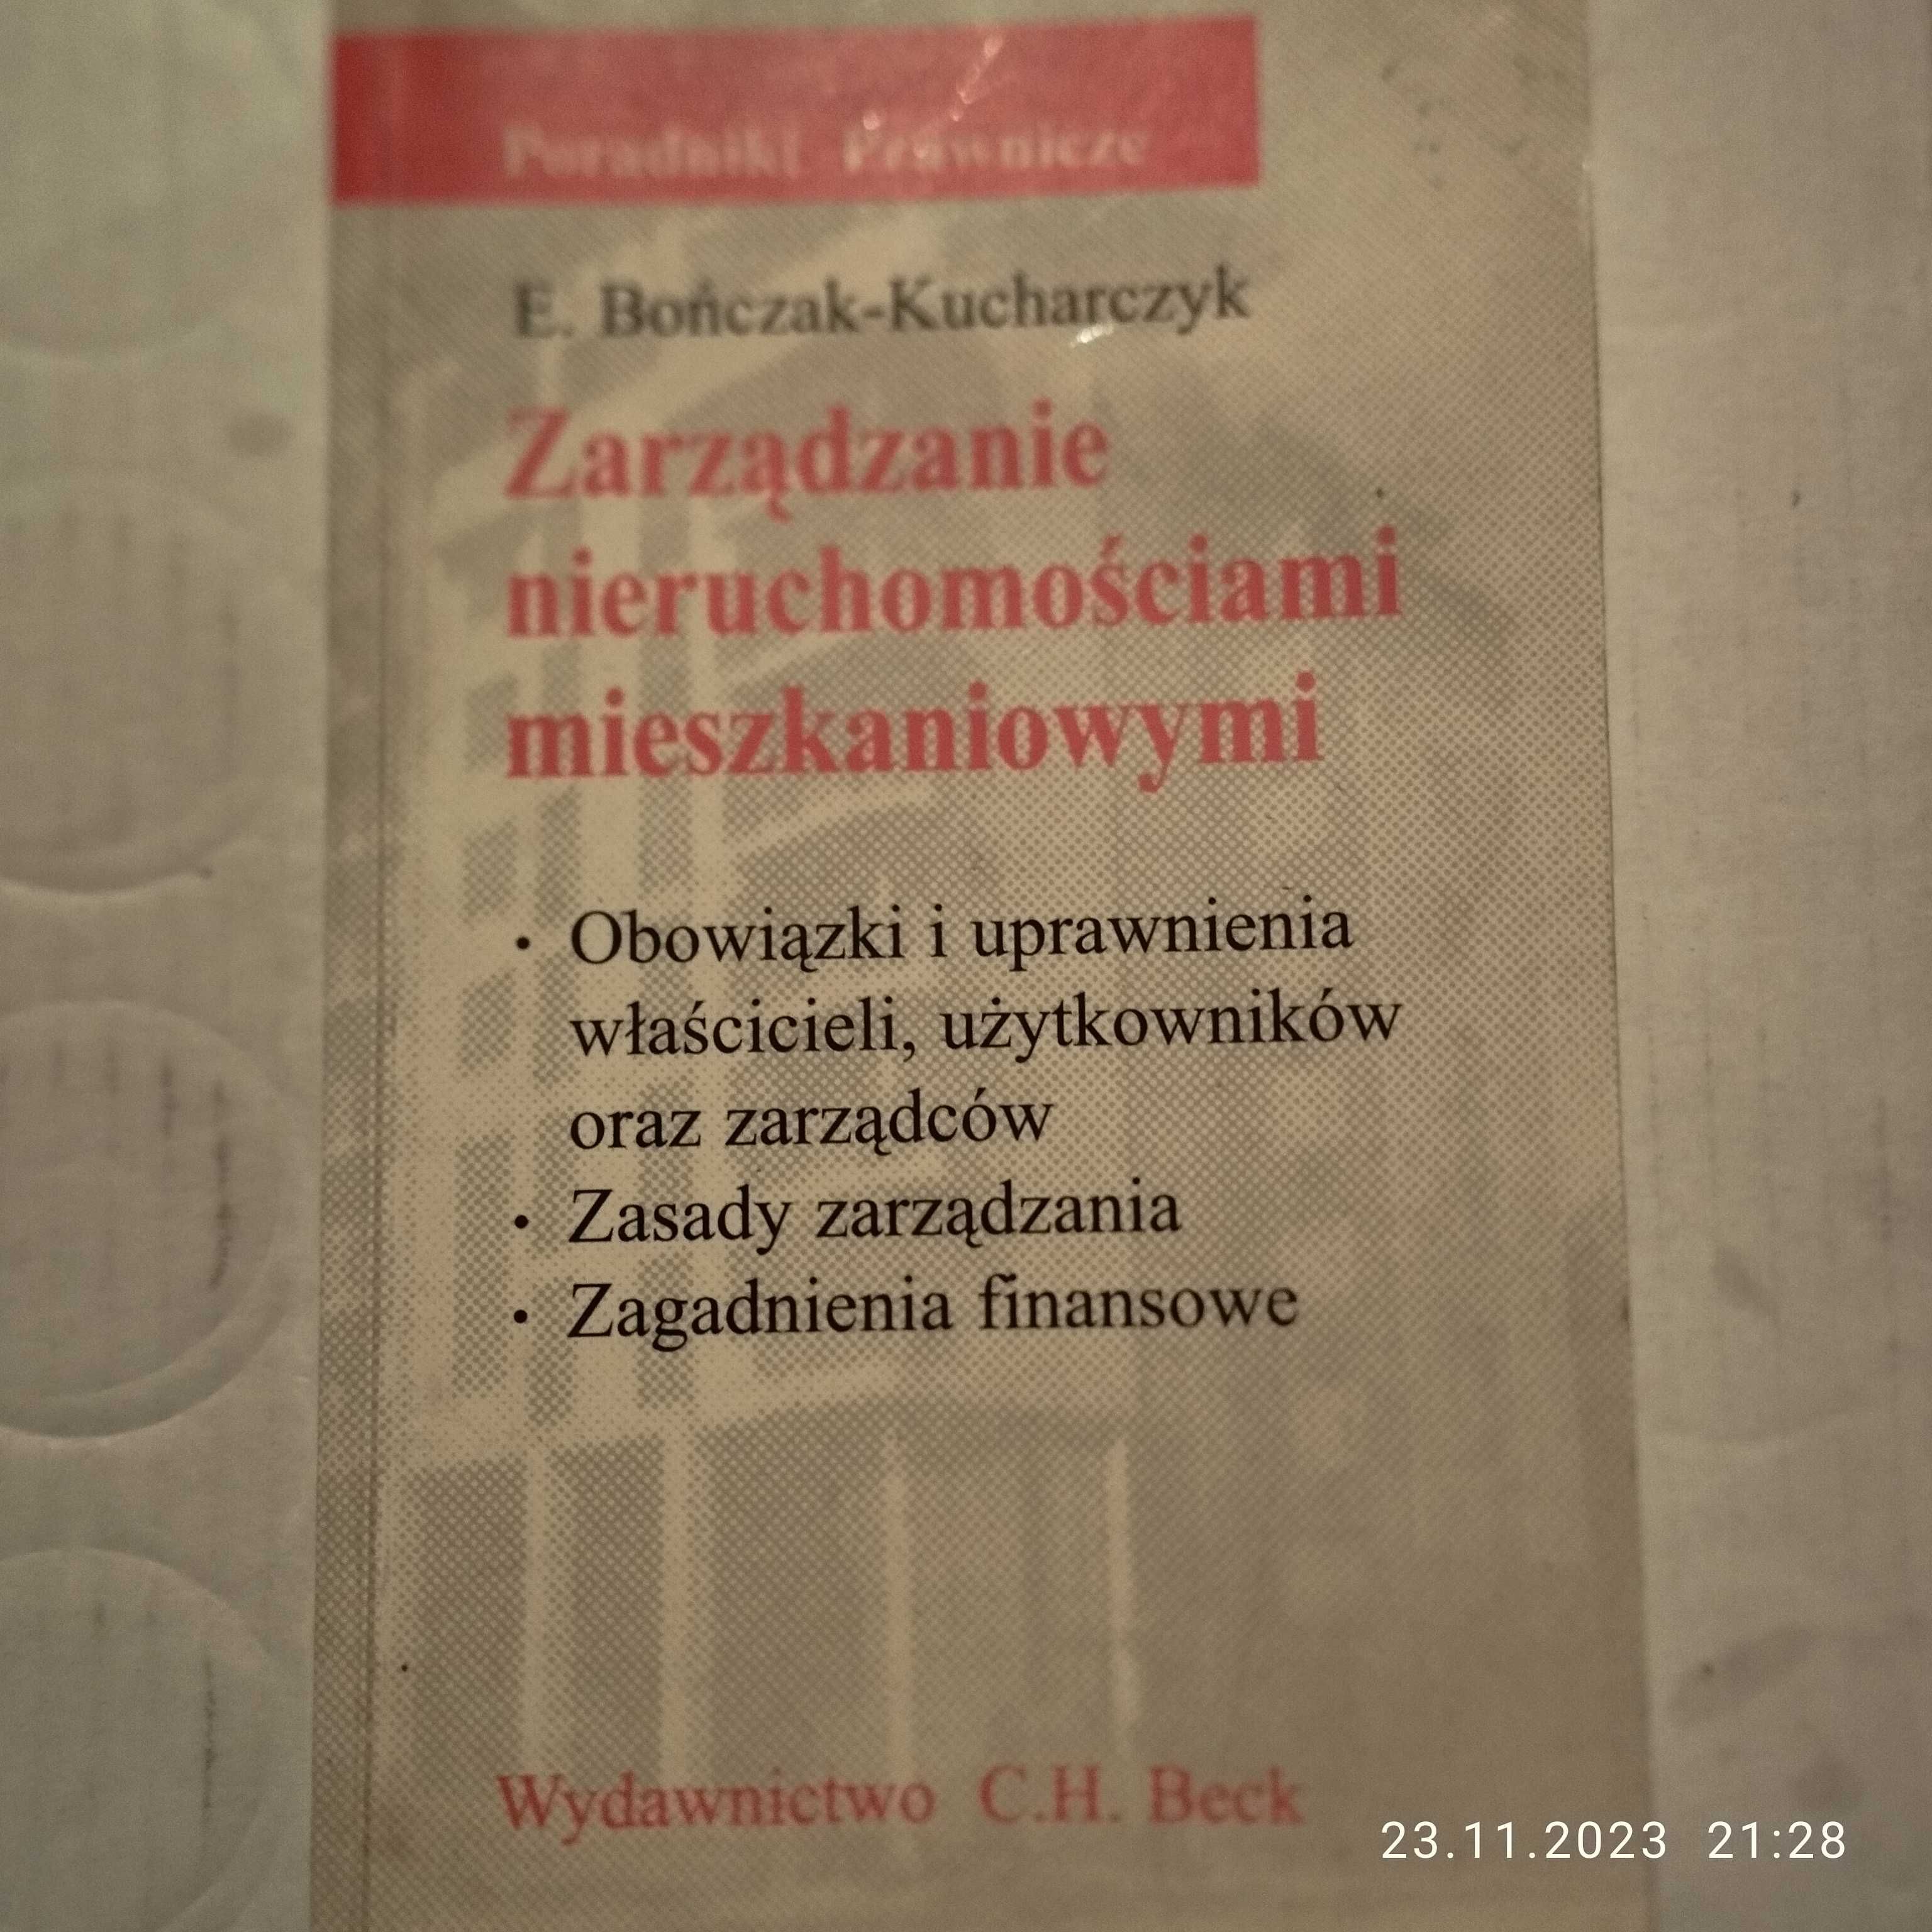 Zarządzanie nieruchomościami mieszkaniowymi - E.Bończak - Kucharczyk.